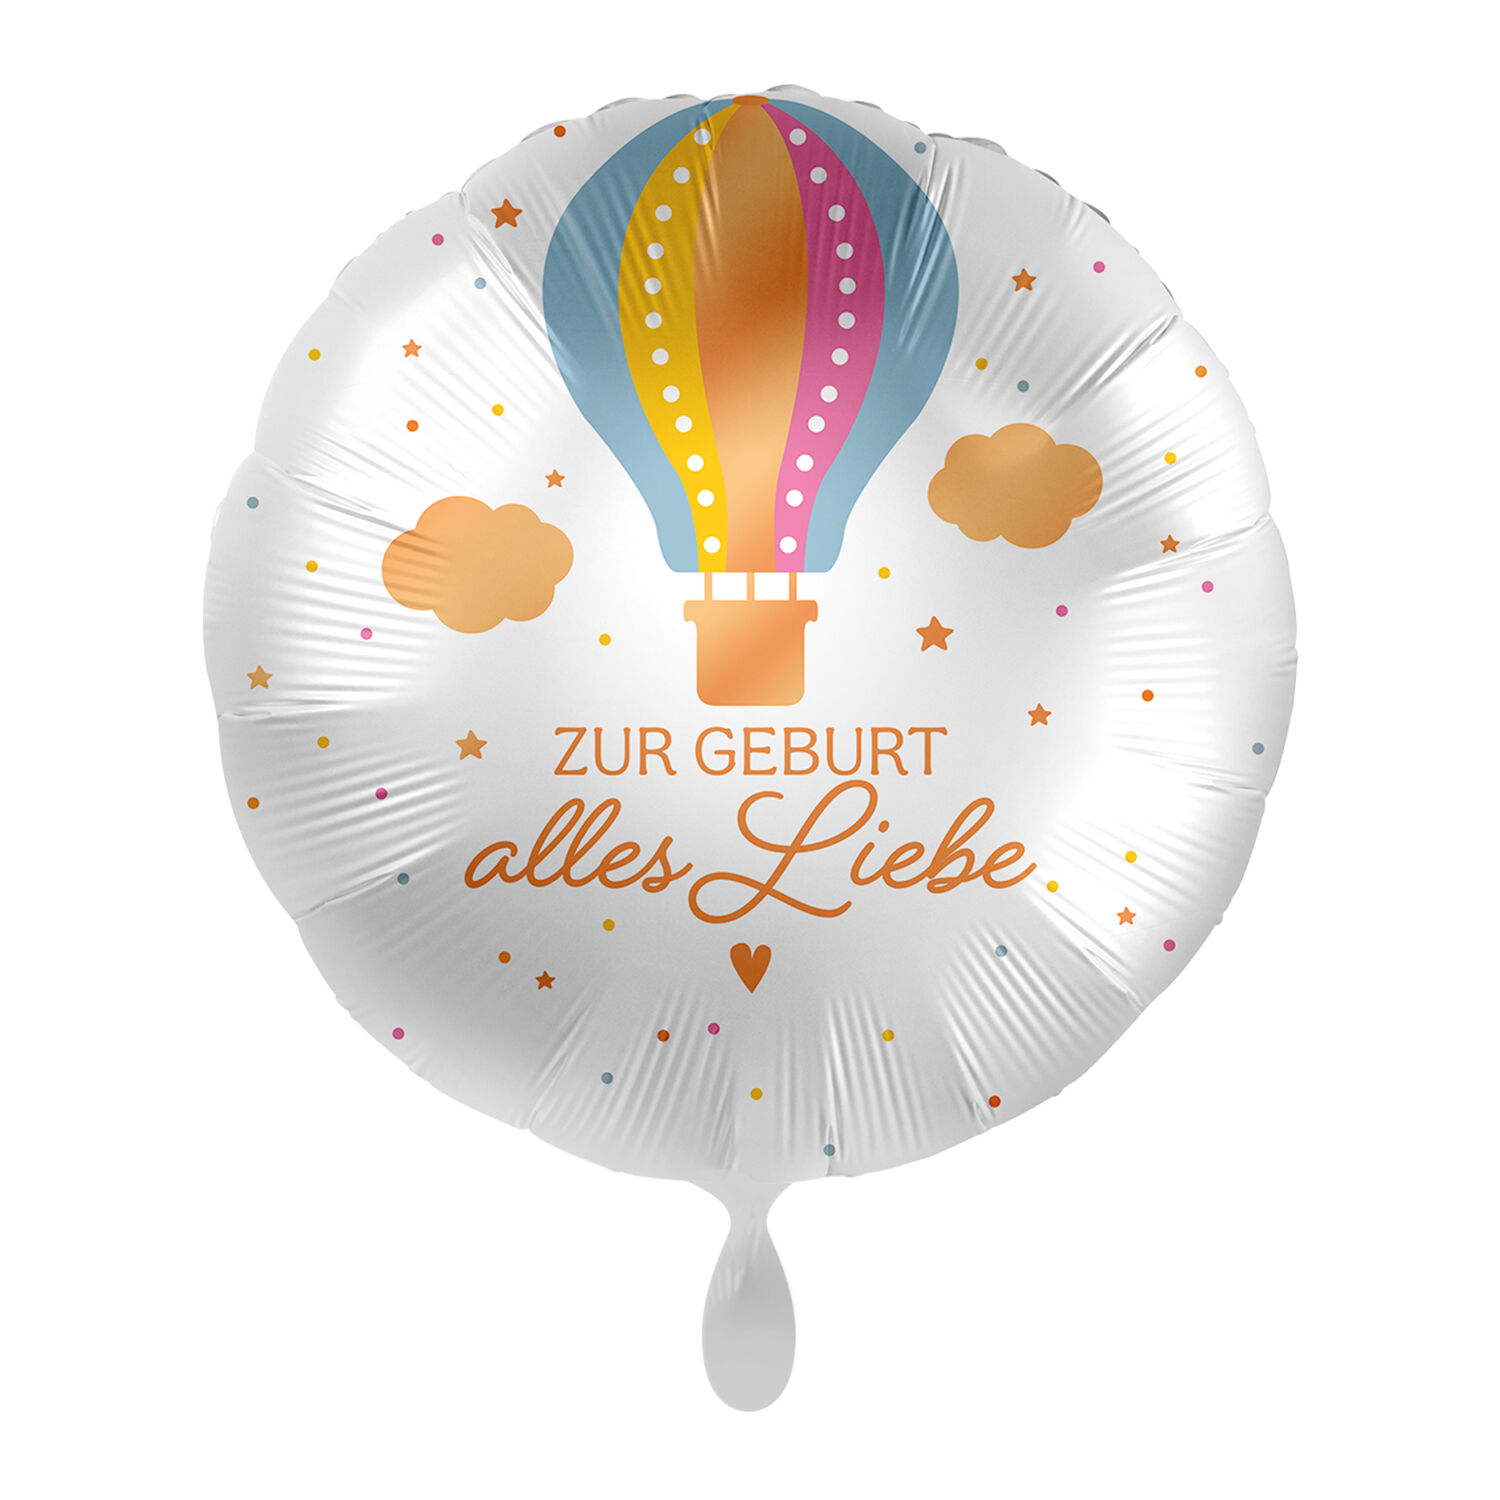 NEU Folienballon - Zur Geburt alles Liebe - ca. 45cm Durchmesser